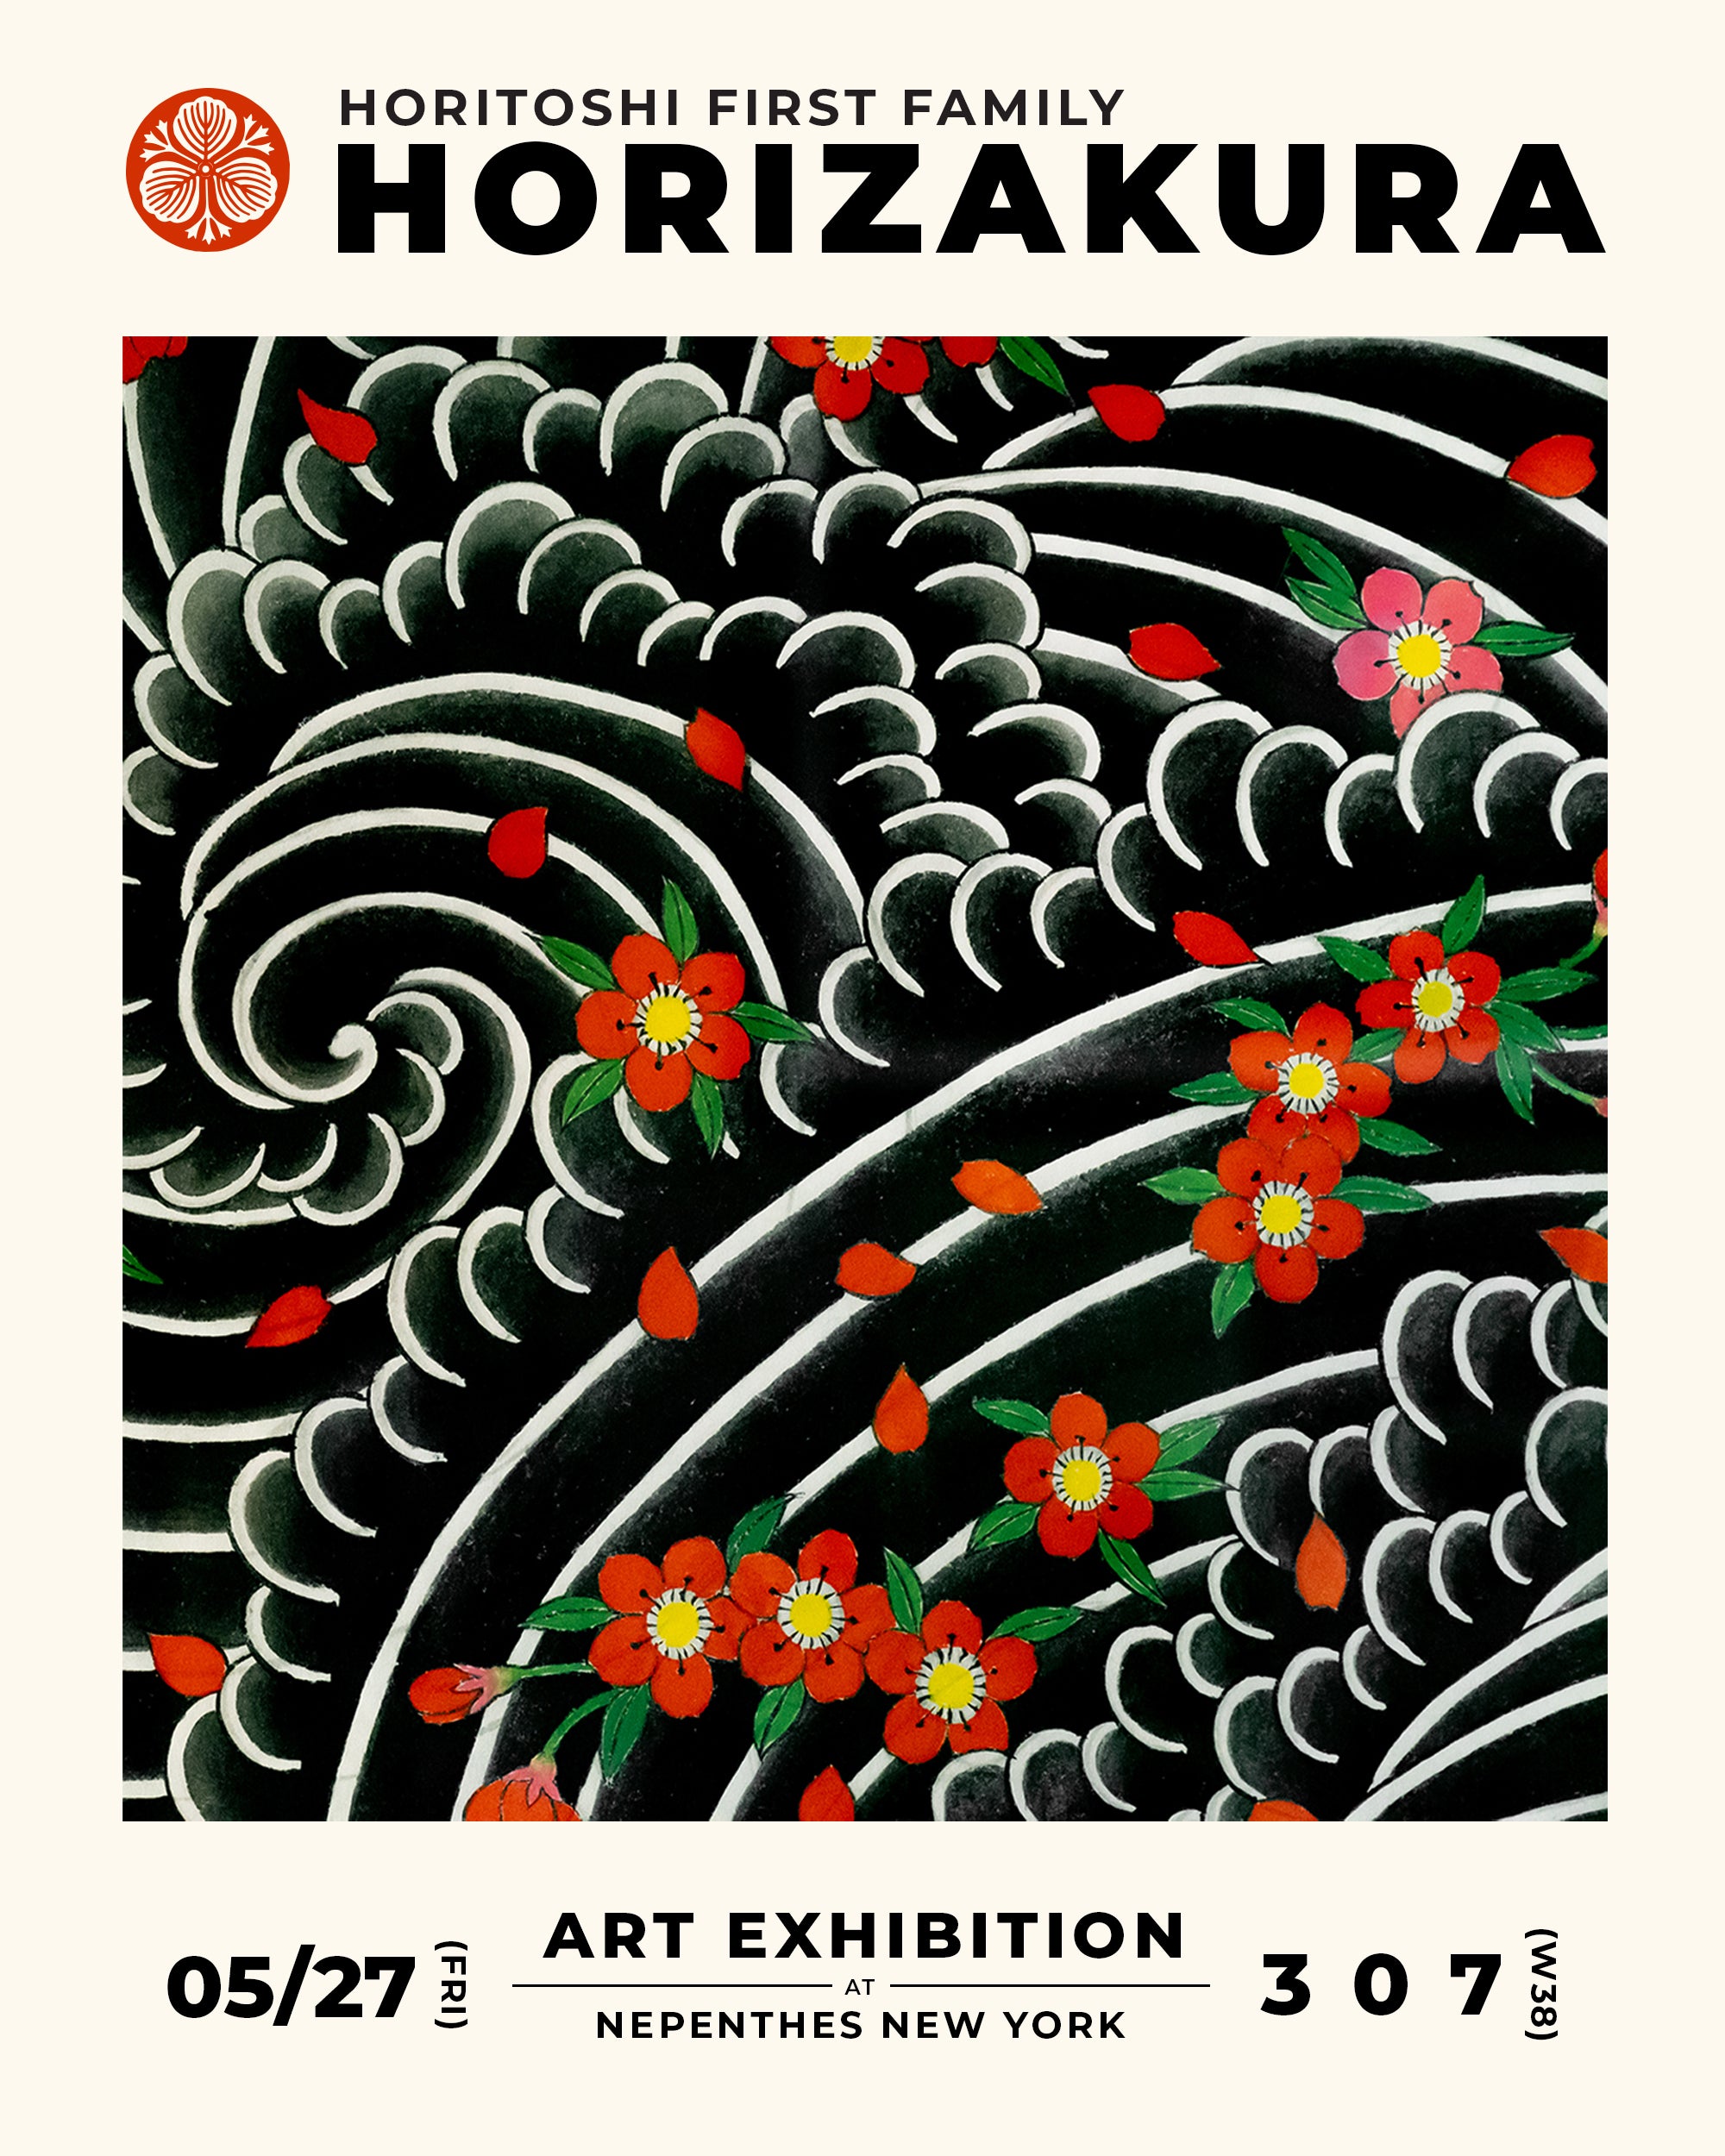 Horitoshi First Family, Horizakura Exhibition at Nepenthes NY